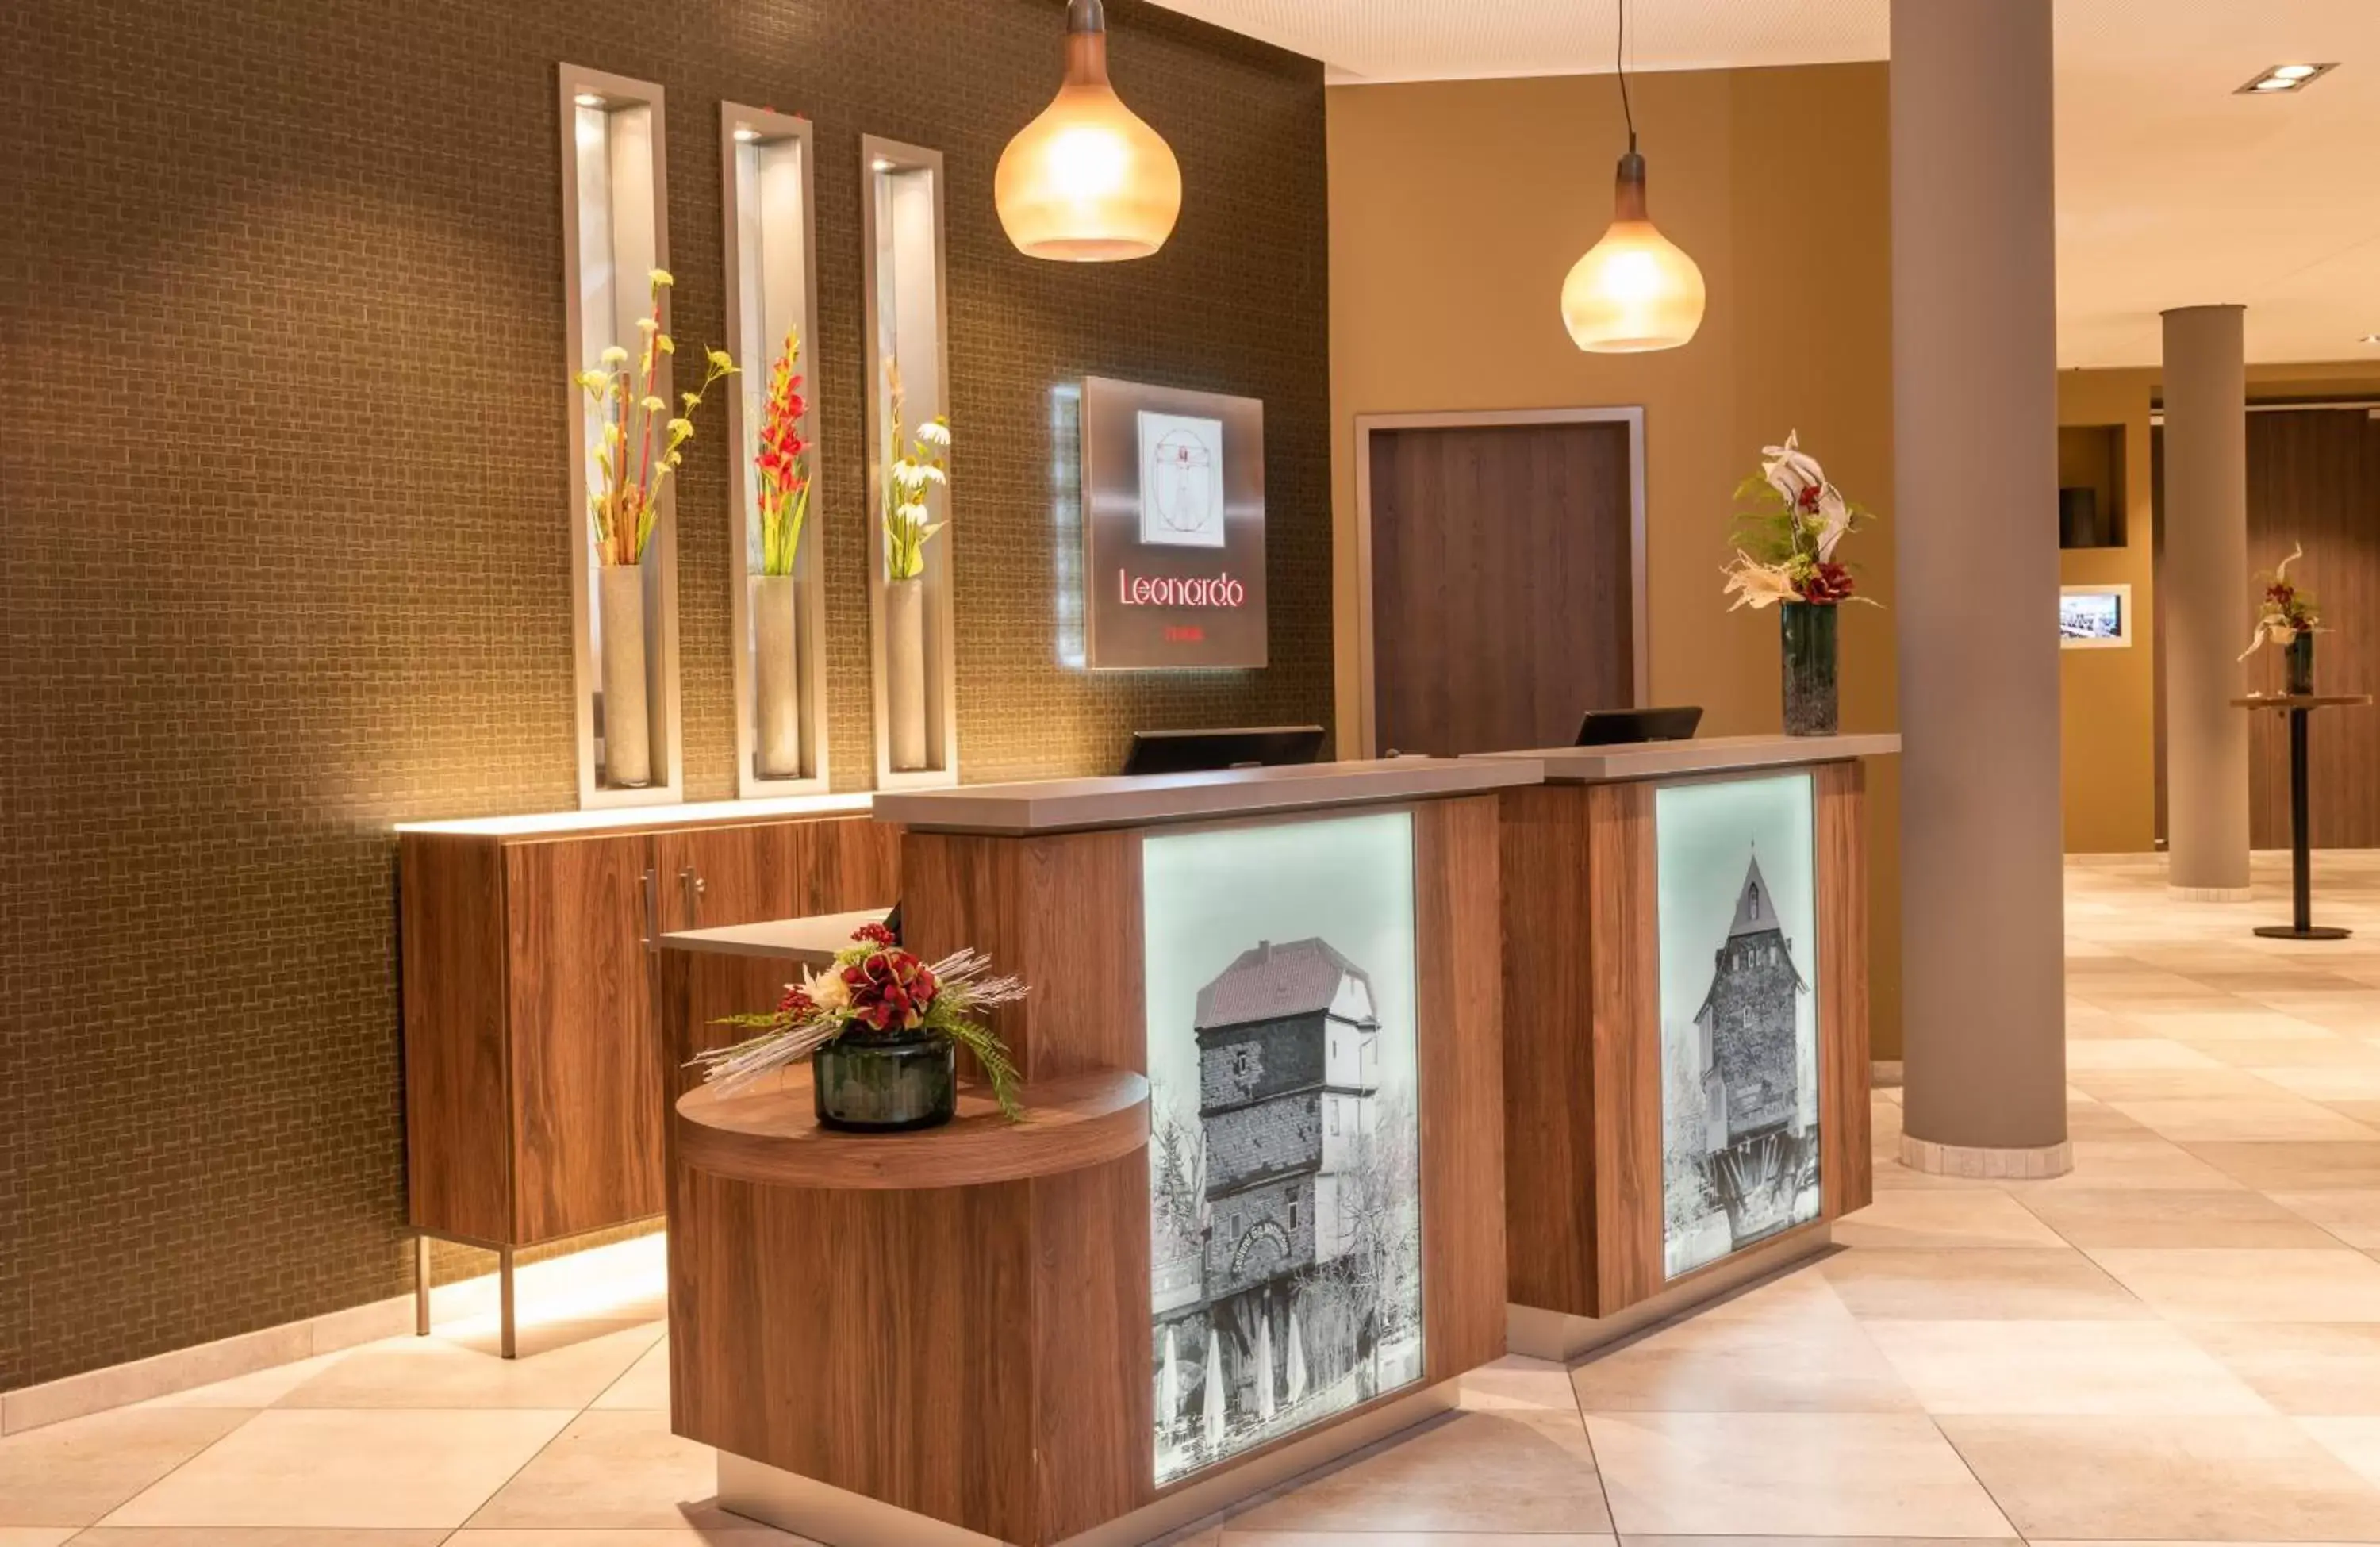 Lobby or reception, Lobby/Reception in Leonardo Hotel Bad Kreuznach